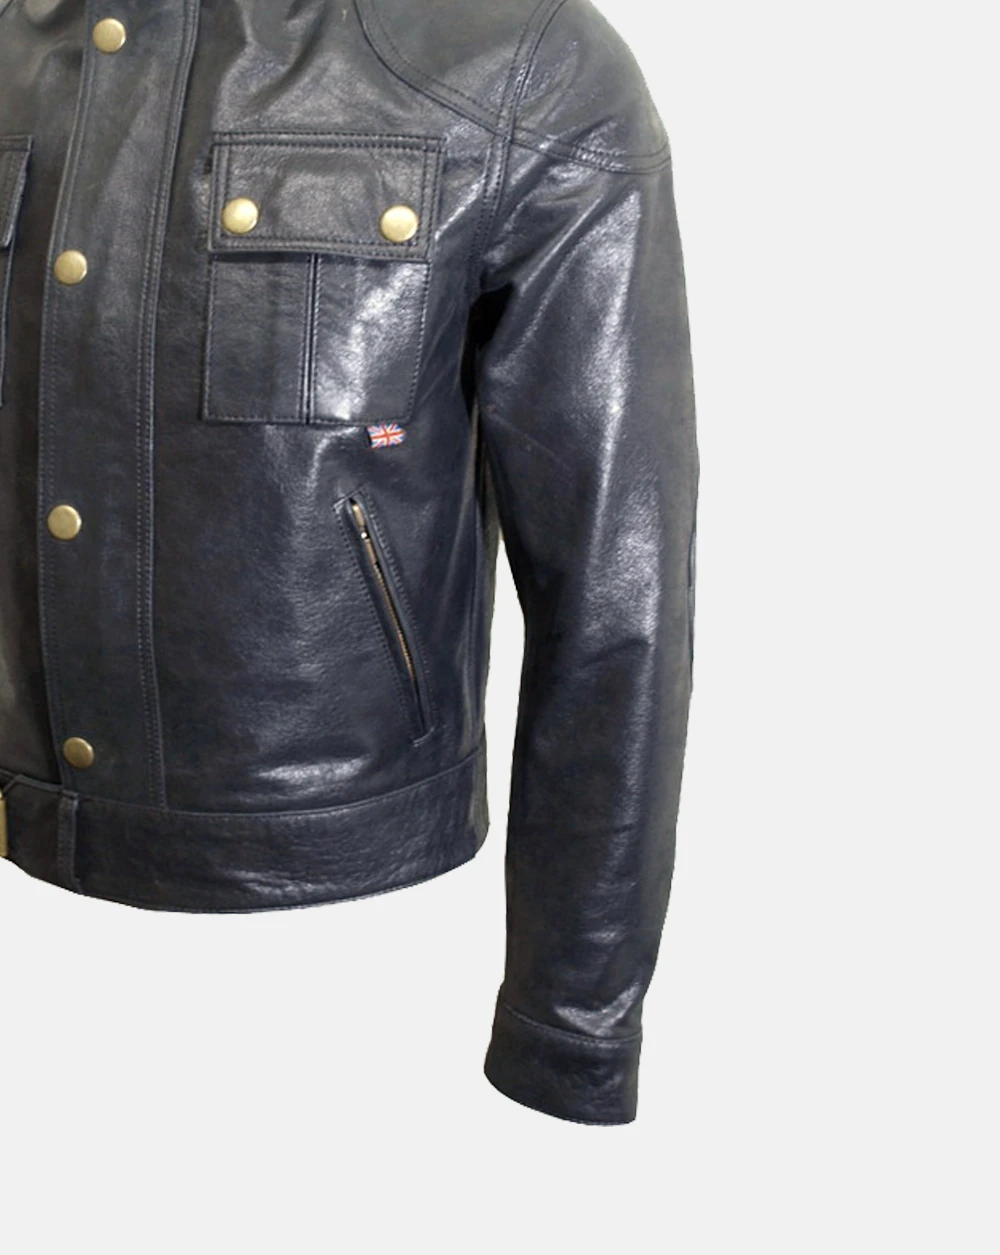 Cougar Legend Leather Jacket